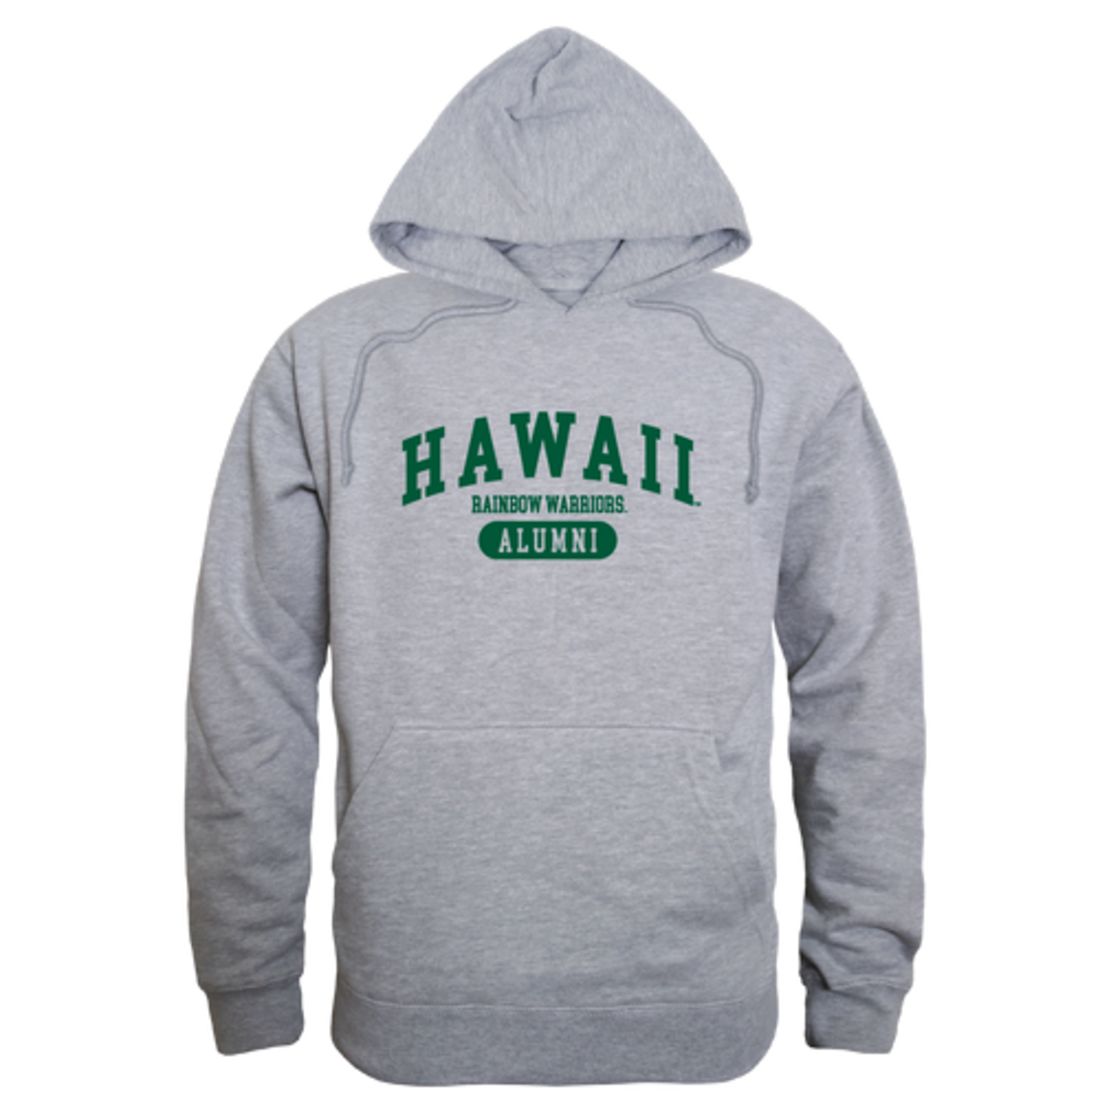 University of Hawaii Rainbow Warriors Alumni Fleece Hoodie Sweatshirts Forest-Campus-Wardrobe